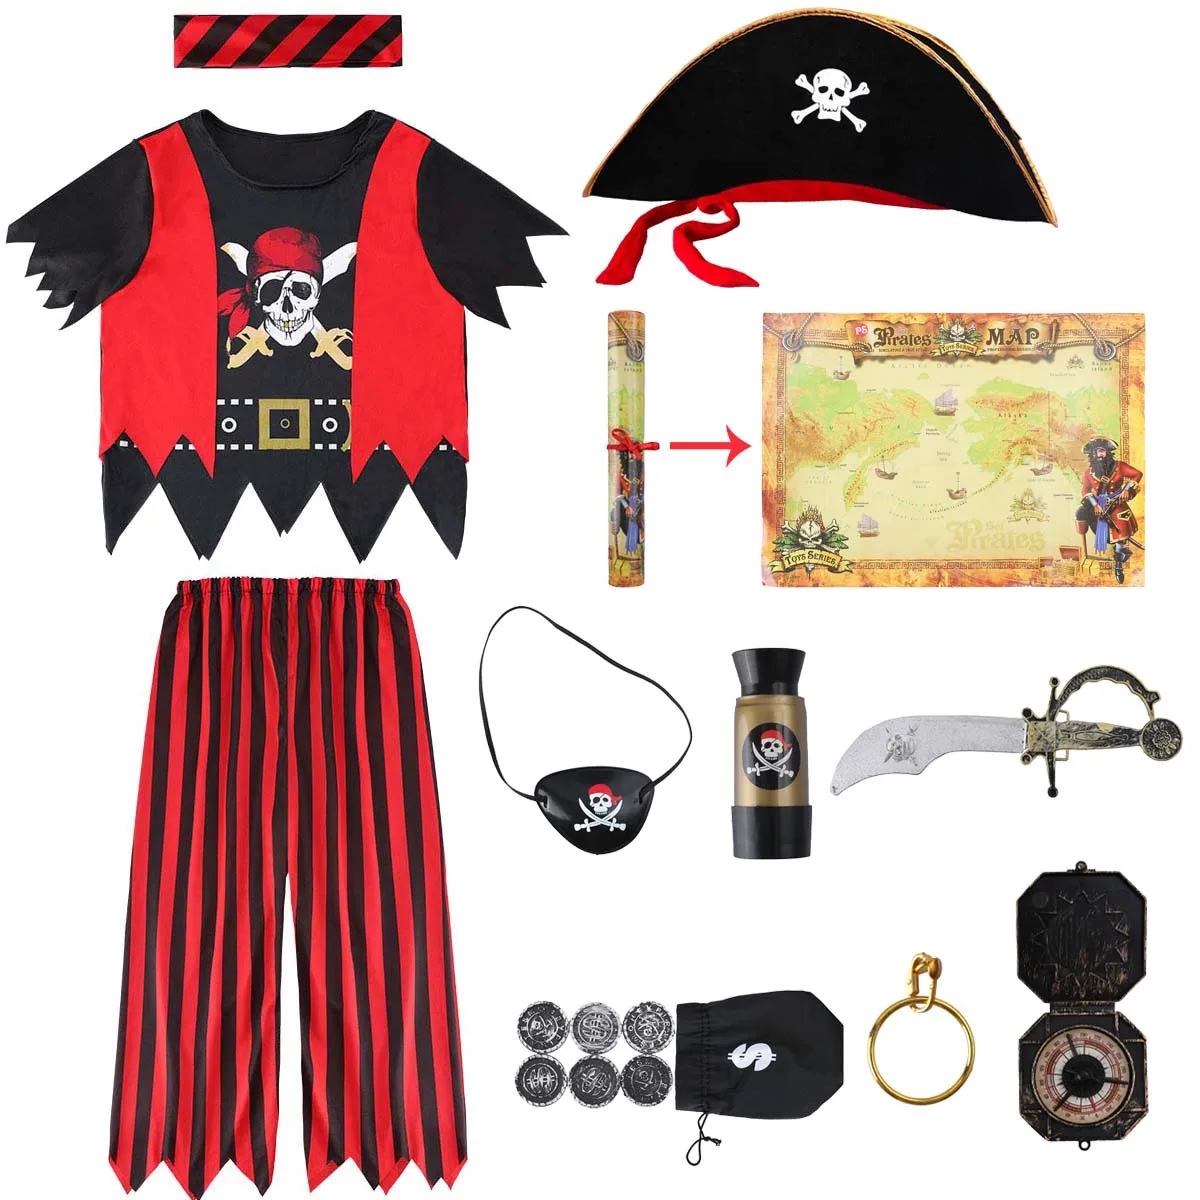 Купить карнавальные костюмы Пираты для детей по недорогой цене с доставкой по Москве и России